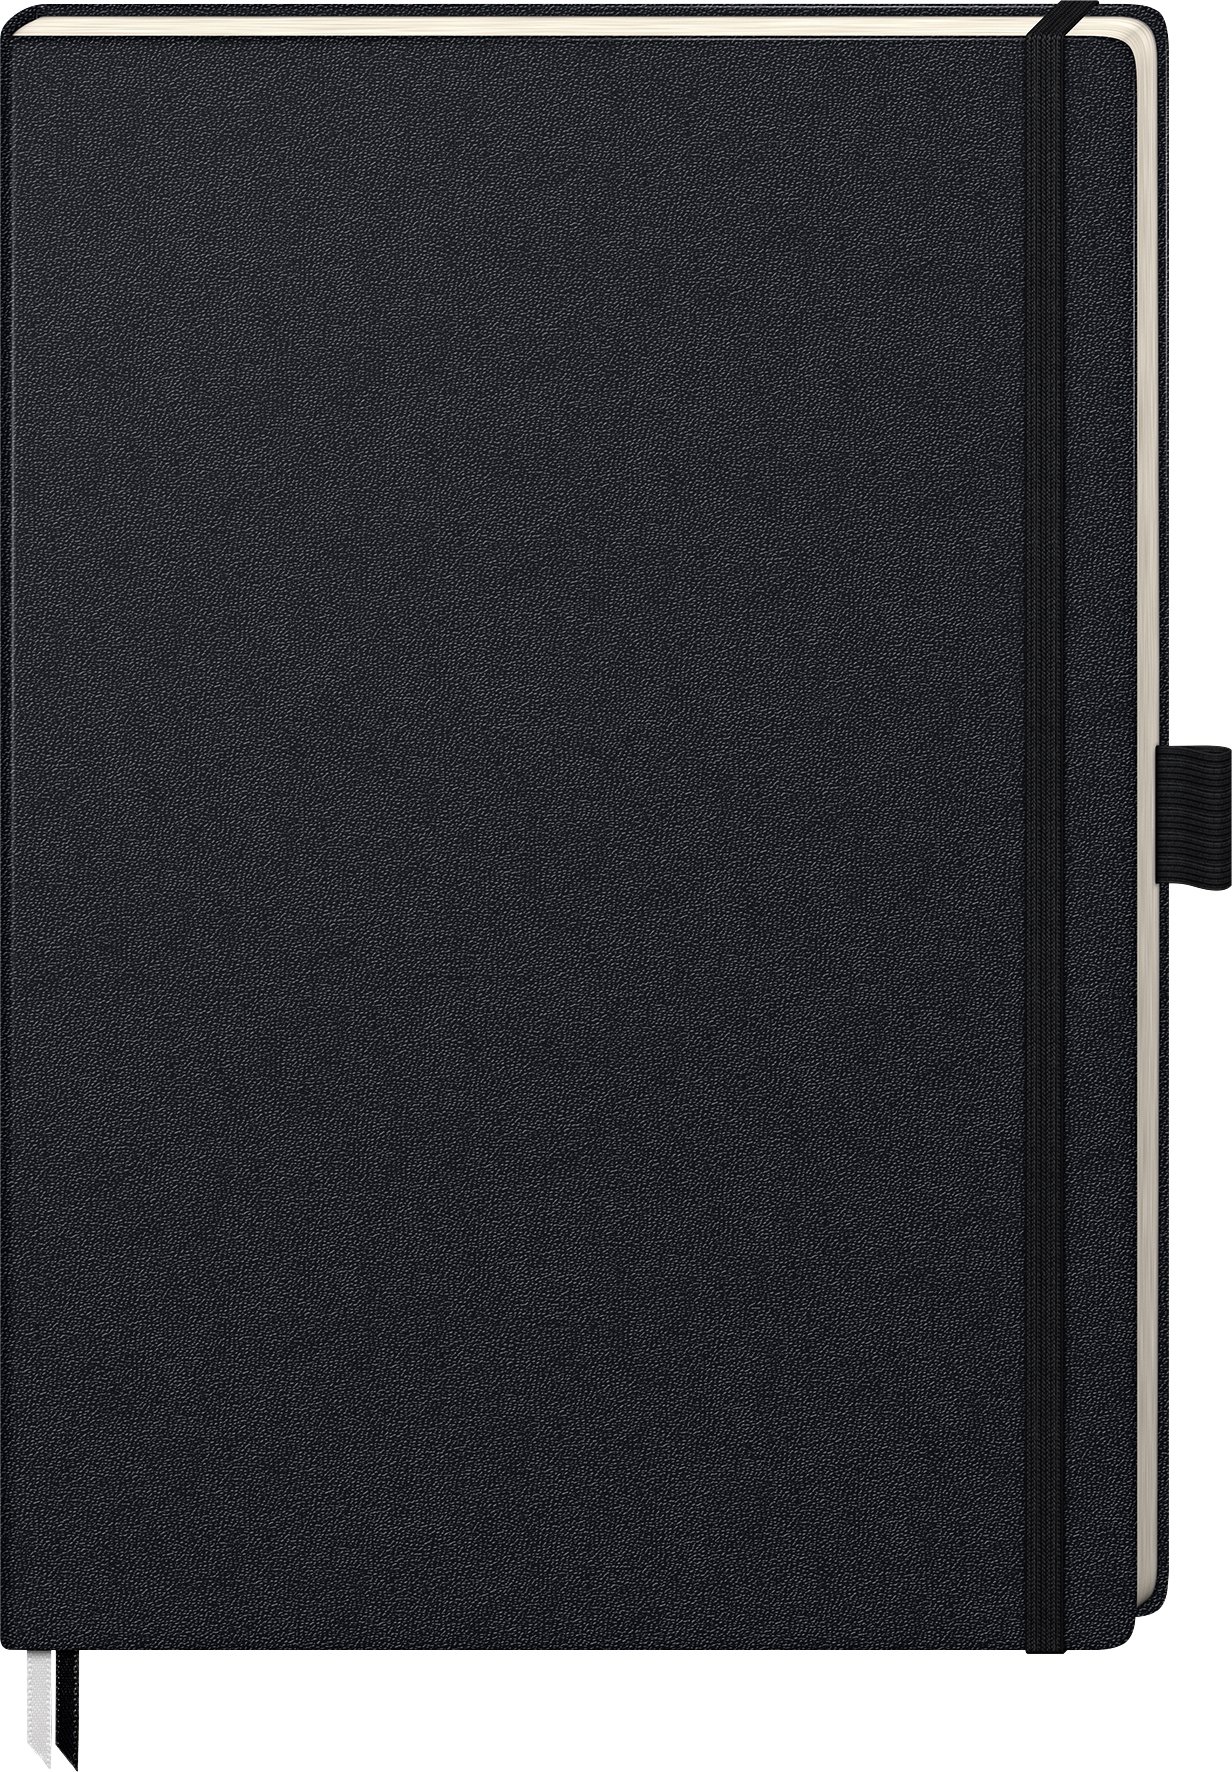 Brunnen 105528905 Notizbuch Kompagnon Klassik (Hardcover, 21 x 29,4 cm, dotted, 192 Seiten) 1 Stück schwarz